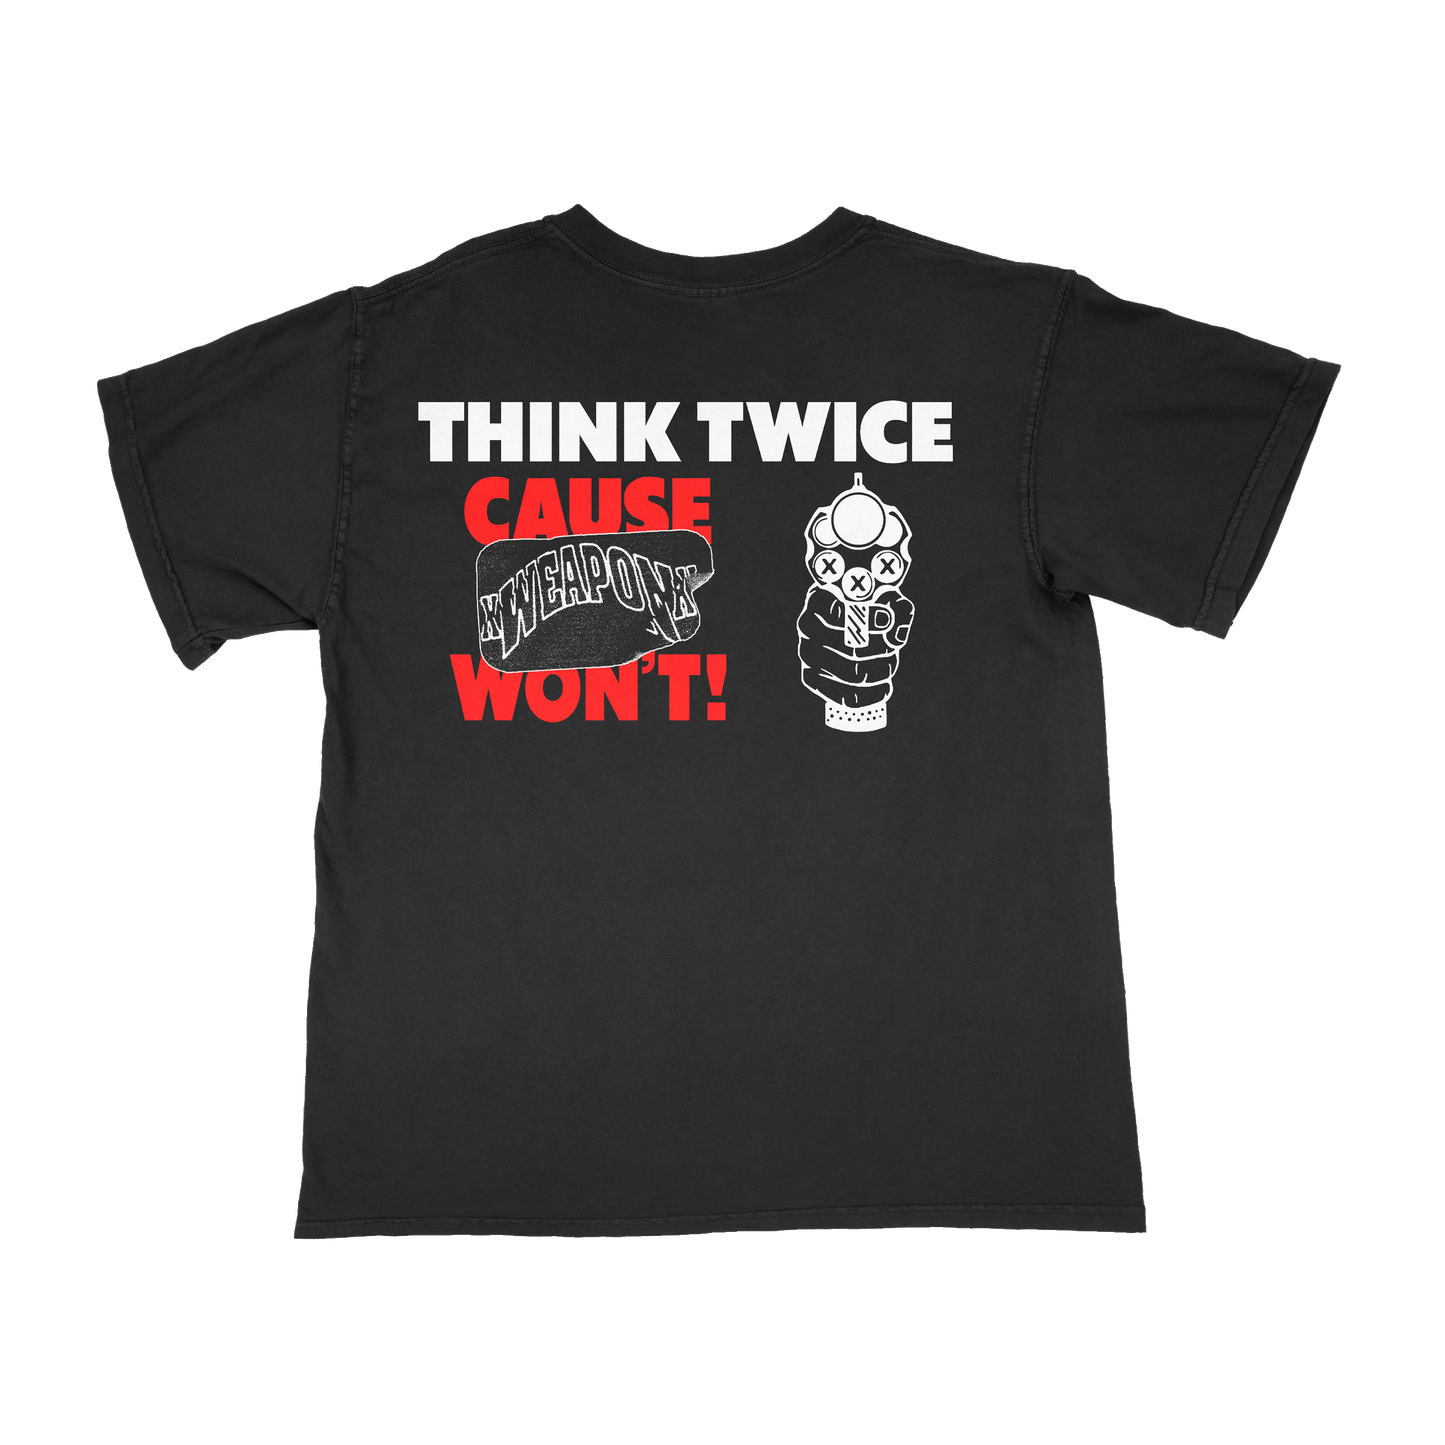 xWeaponx - Think Twice Shirt